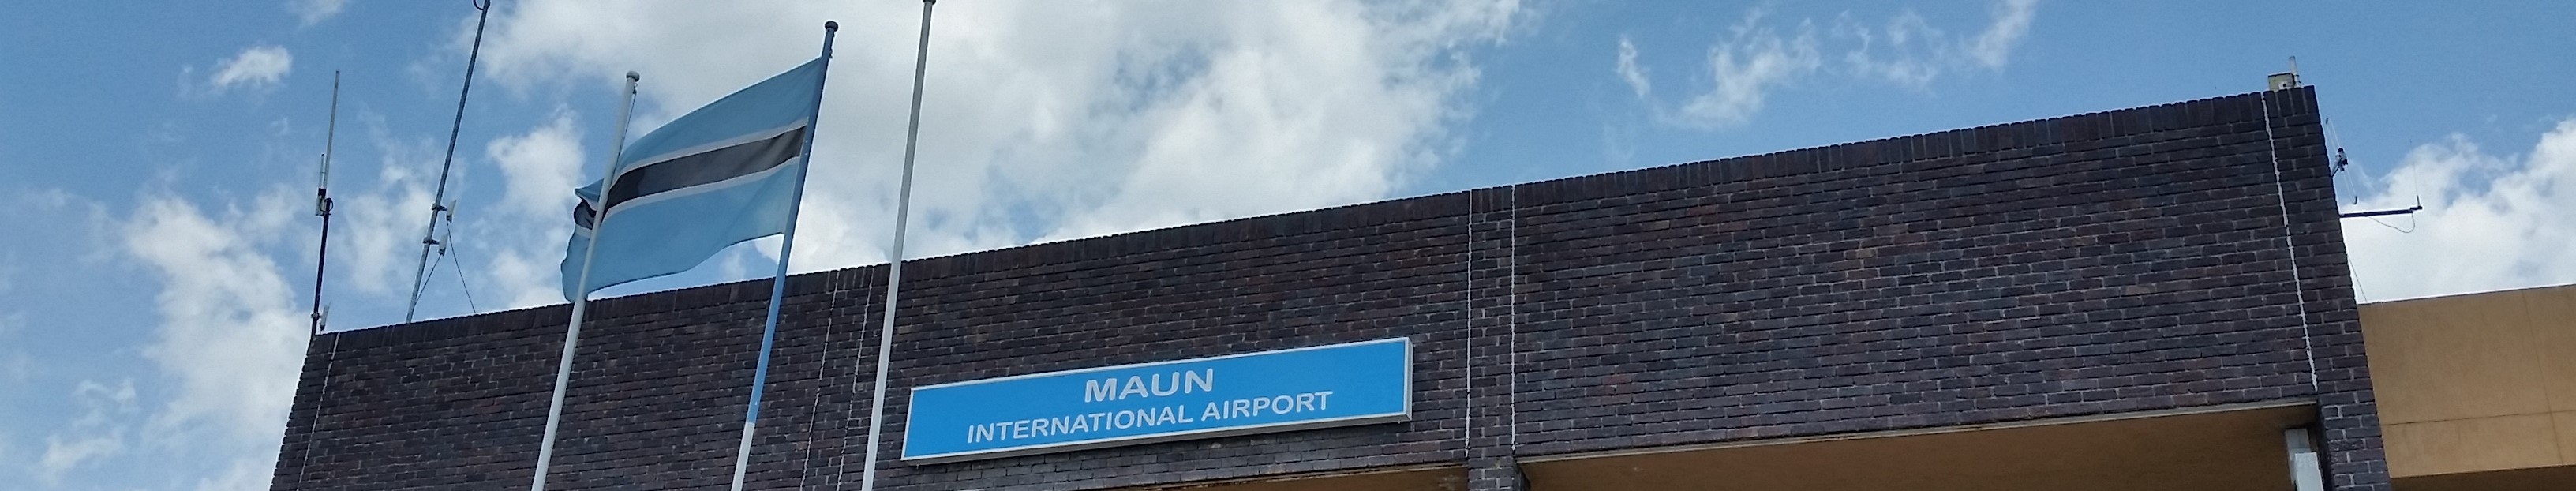 Maun airport, Botswana